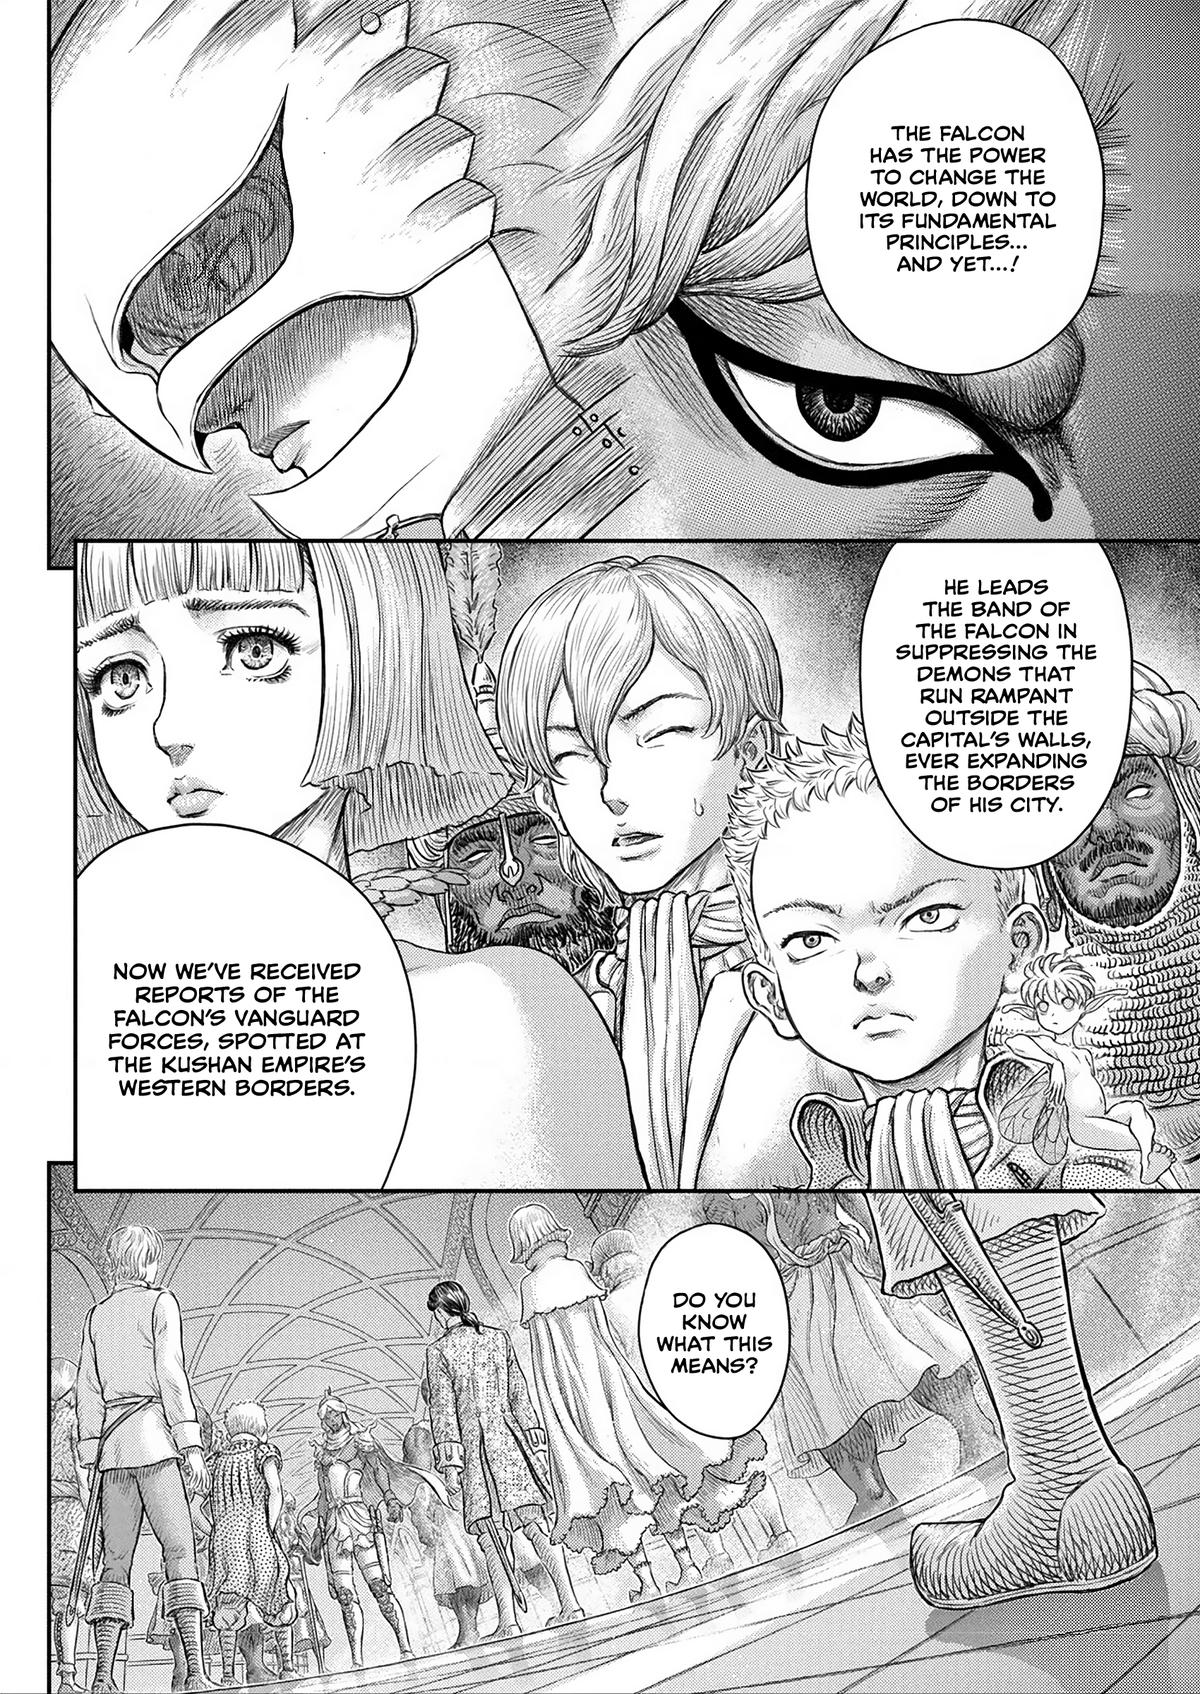 Berserk Manga Chapter 376 image 18